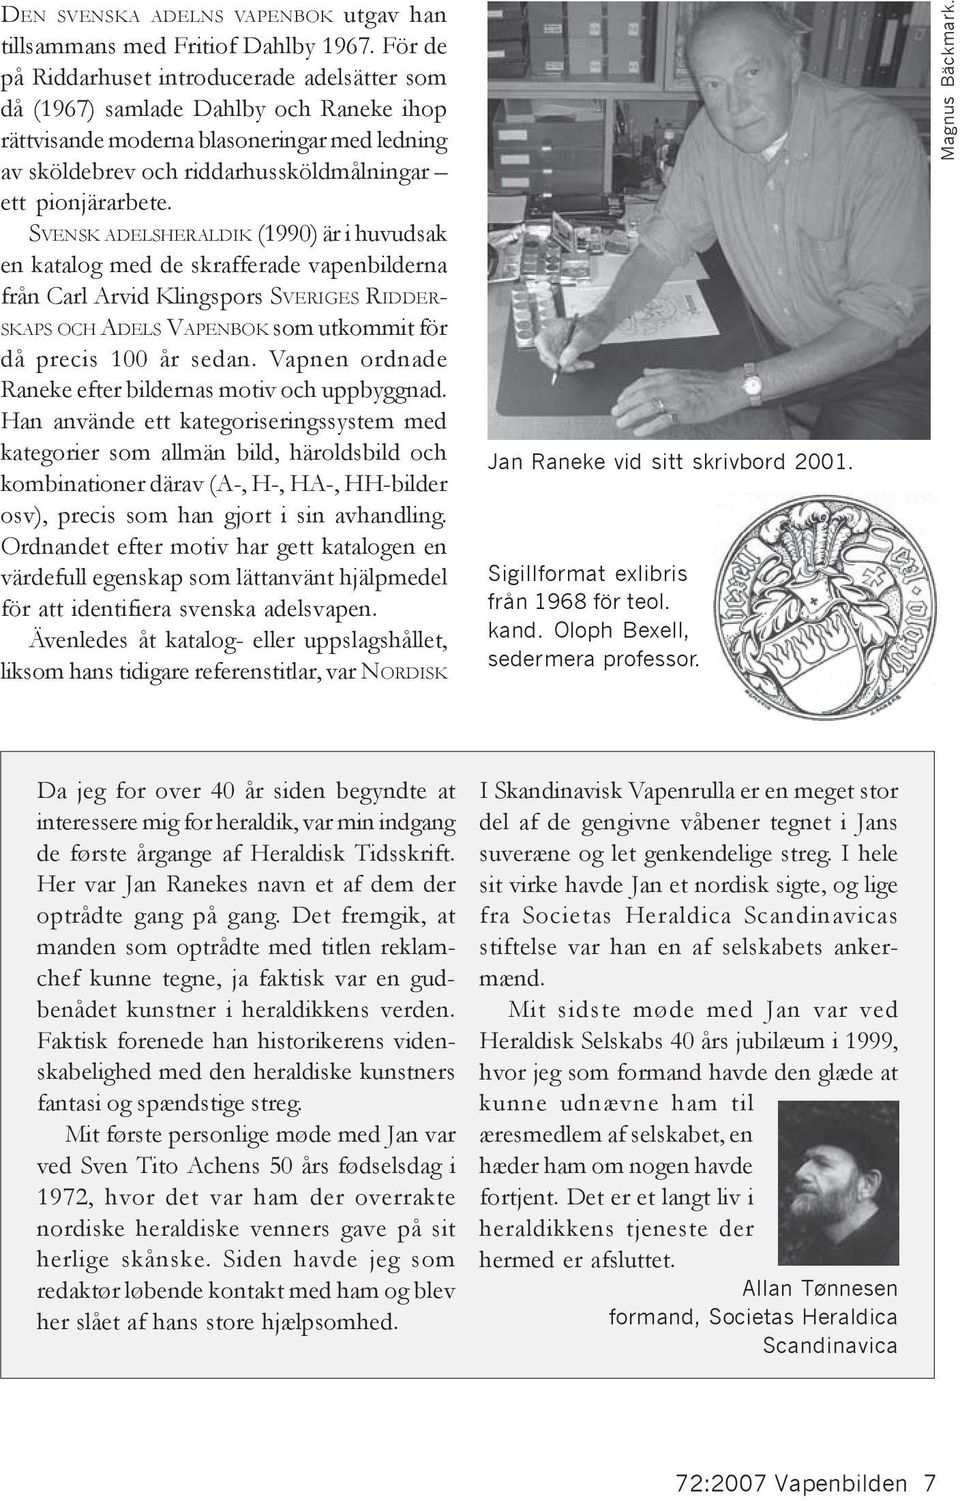 SVENSK ADELSHERALDIK (1990) är i huvudsak en katalog med de skrafferade vapenbilderna från Carl Arvid Klingspors SVERIGES RIDDER- SKAPS OCH ADELS VAPENBOK som utkommit för då precis 100 år sedan.